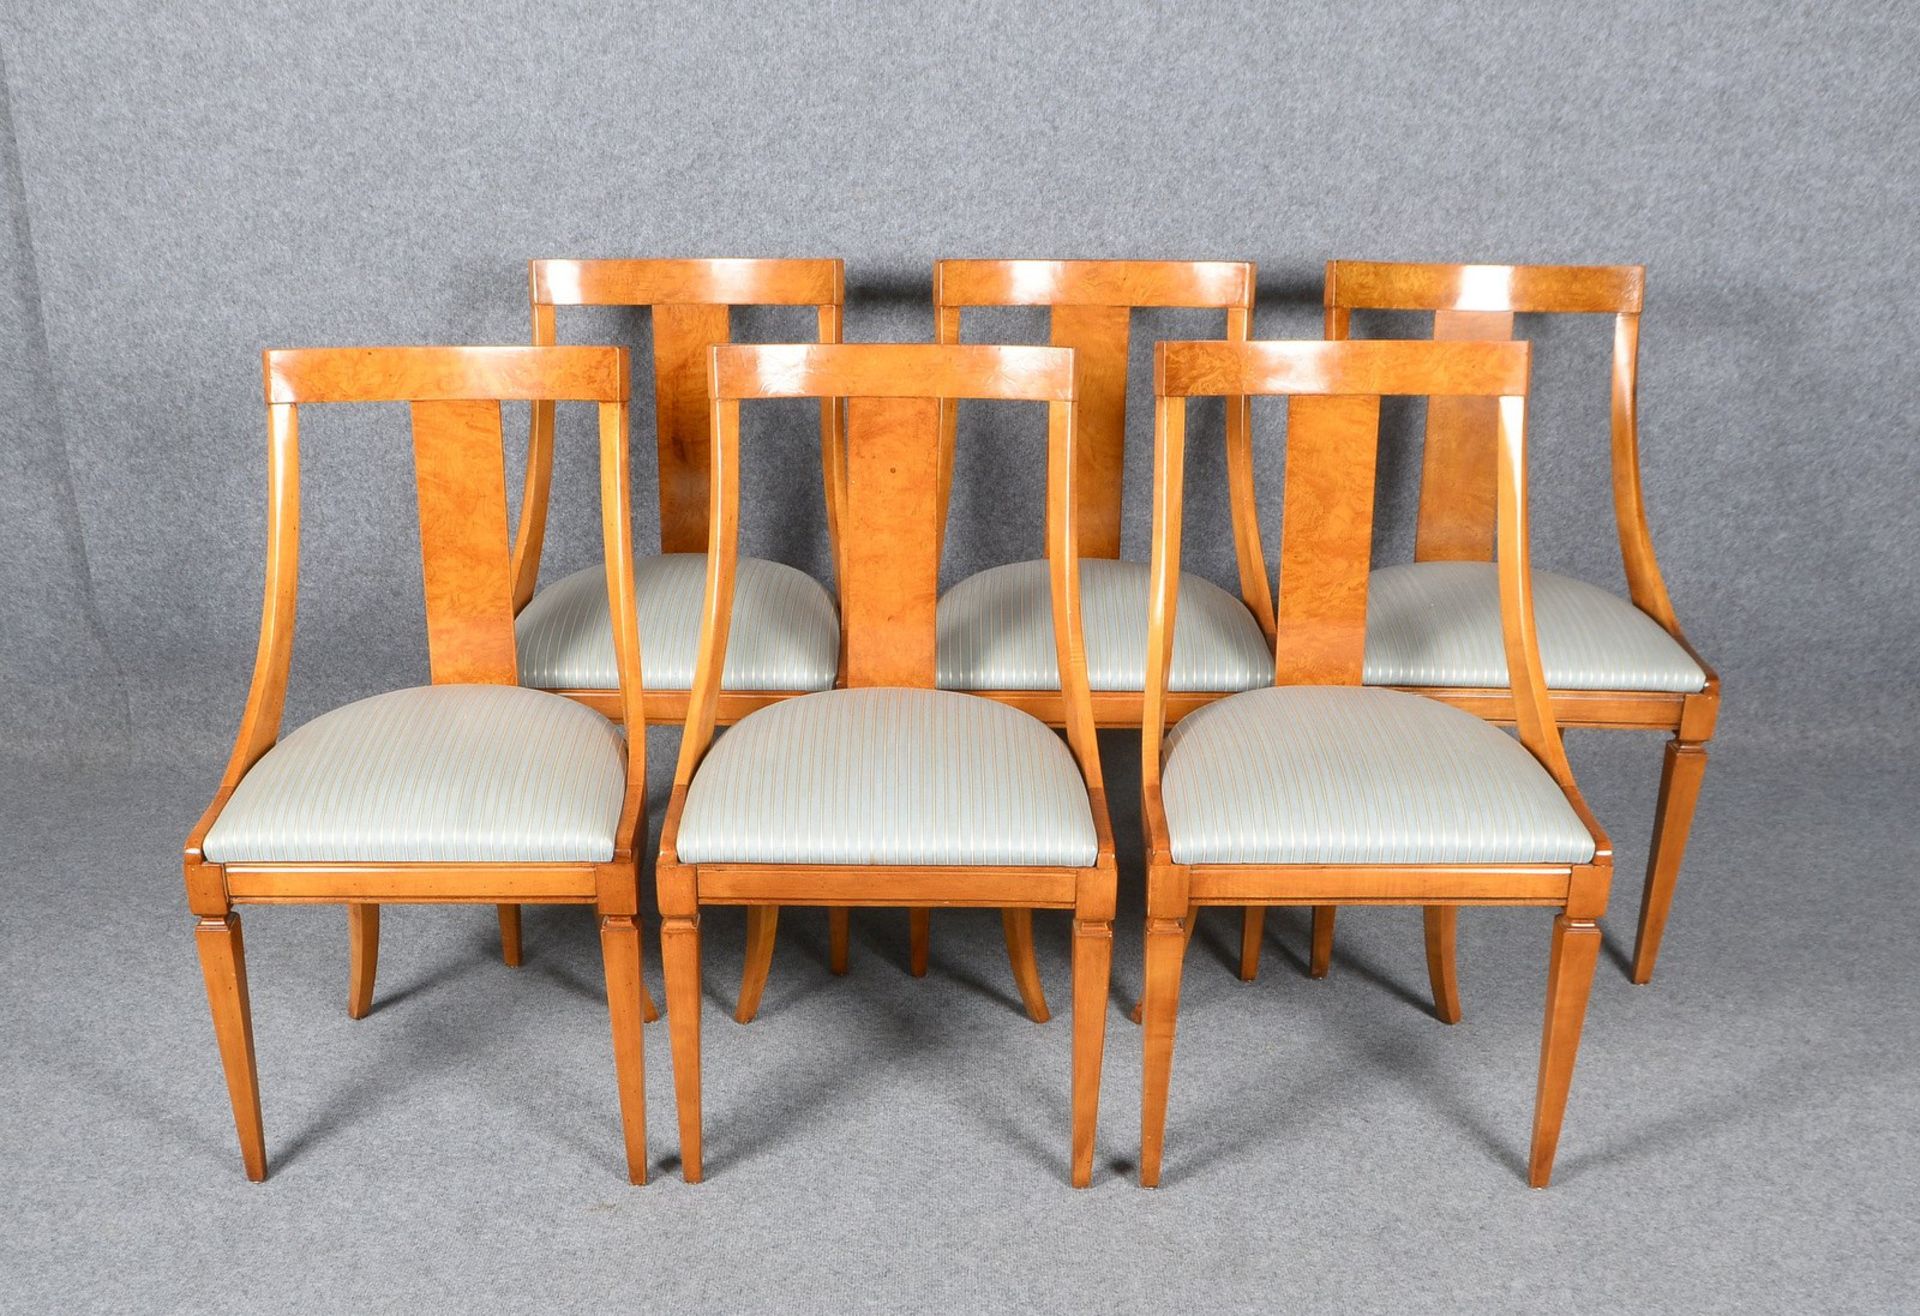 6 Stühle (Stilmöbel), Wurzelholzfurnier, in wohnfertigem Zustand; Sitzhöhe 45 cm